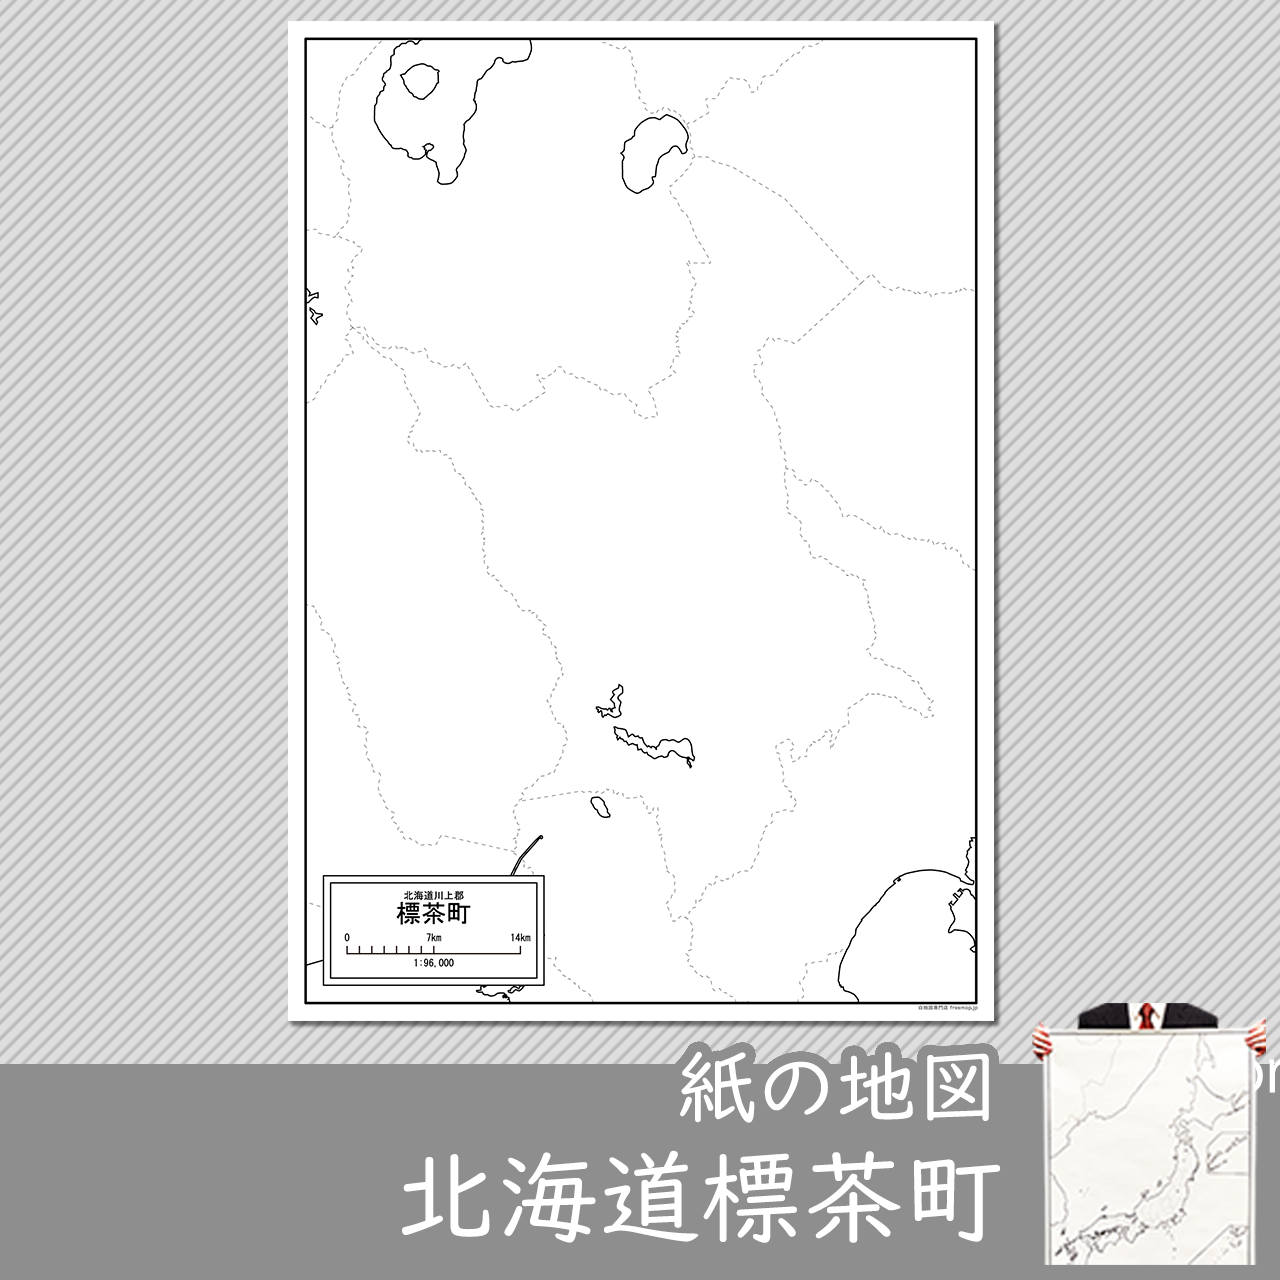 標茶町の紙の白地図のサムネイル